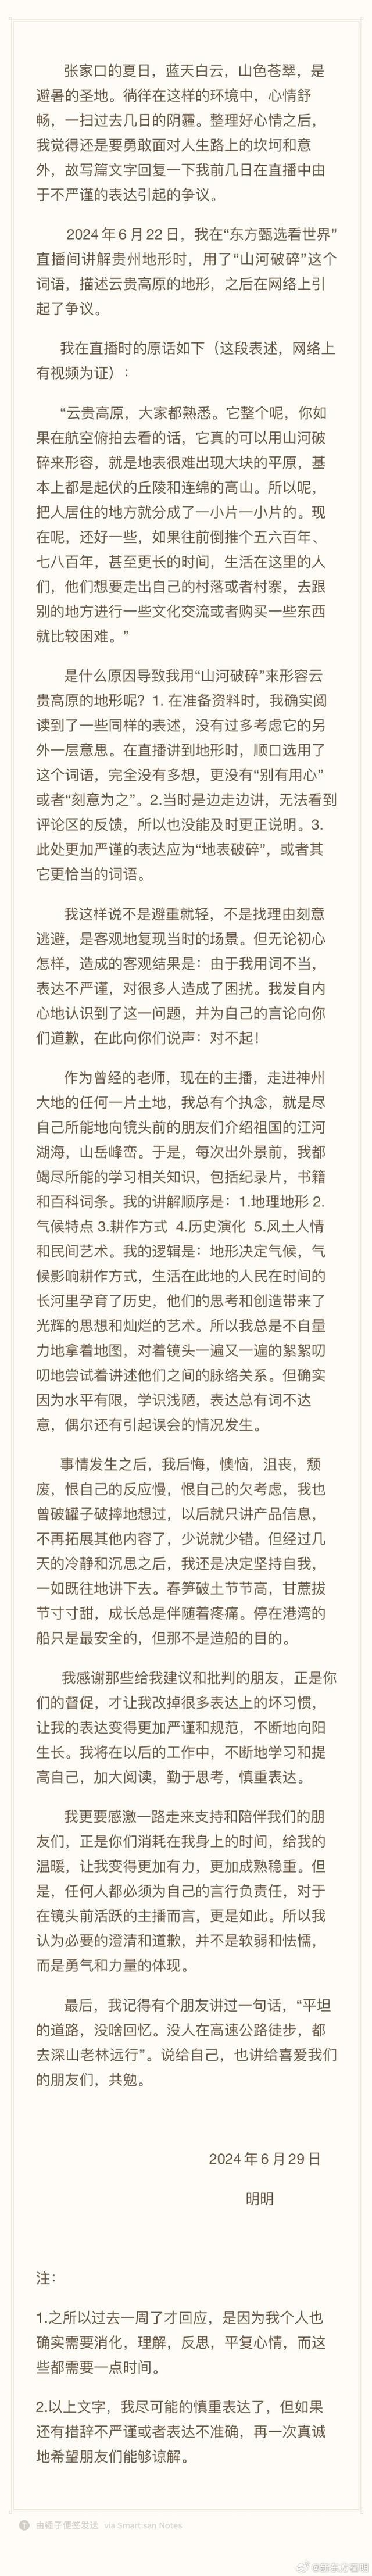 东方甄选主播回应贵州行用词争议 诚挚致歉并澄清误会